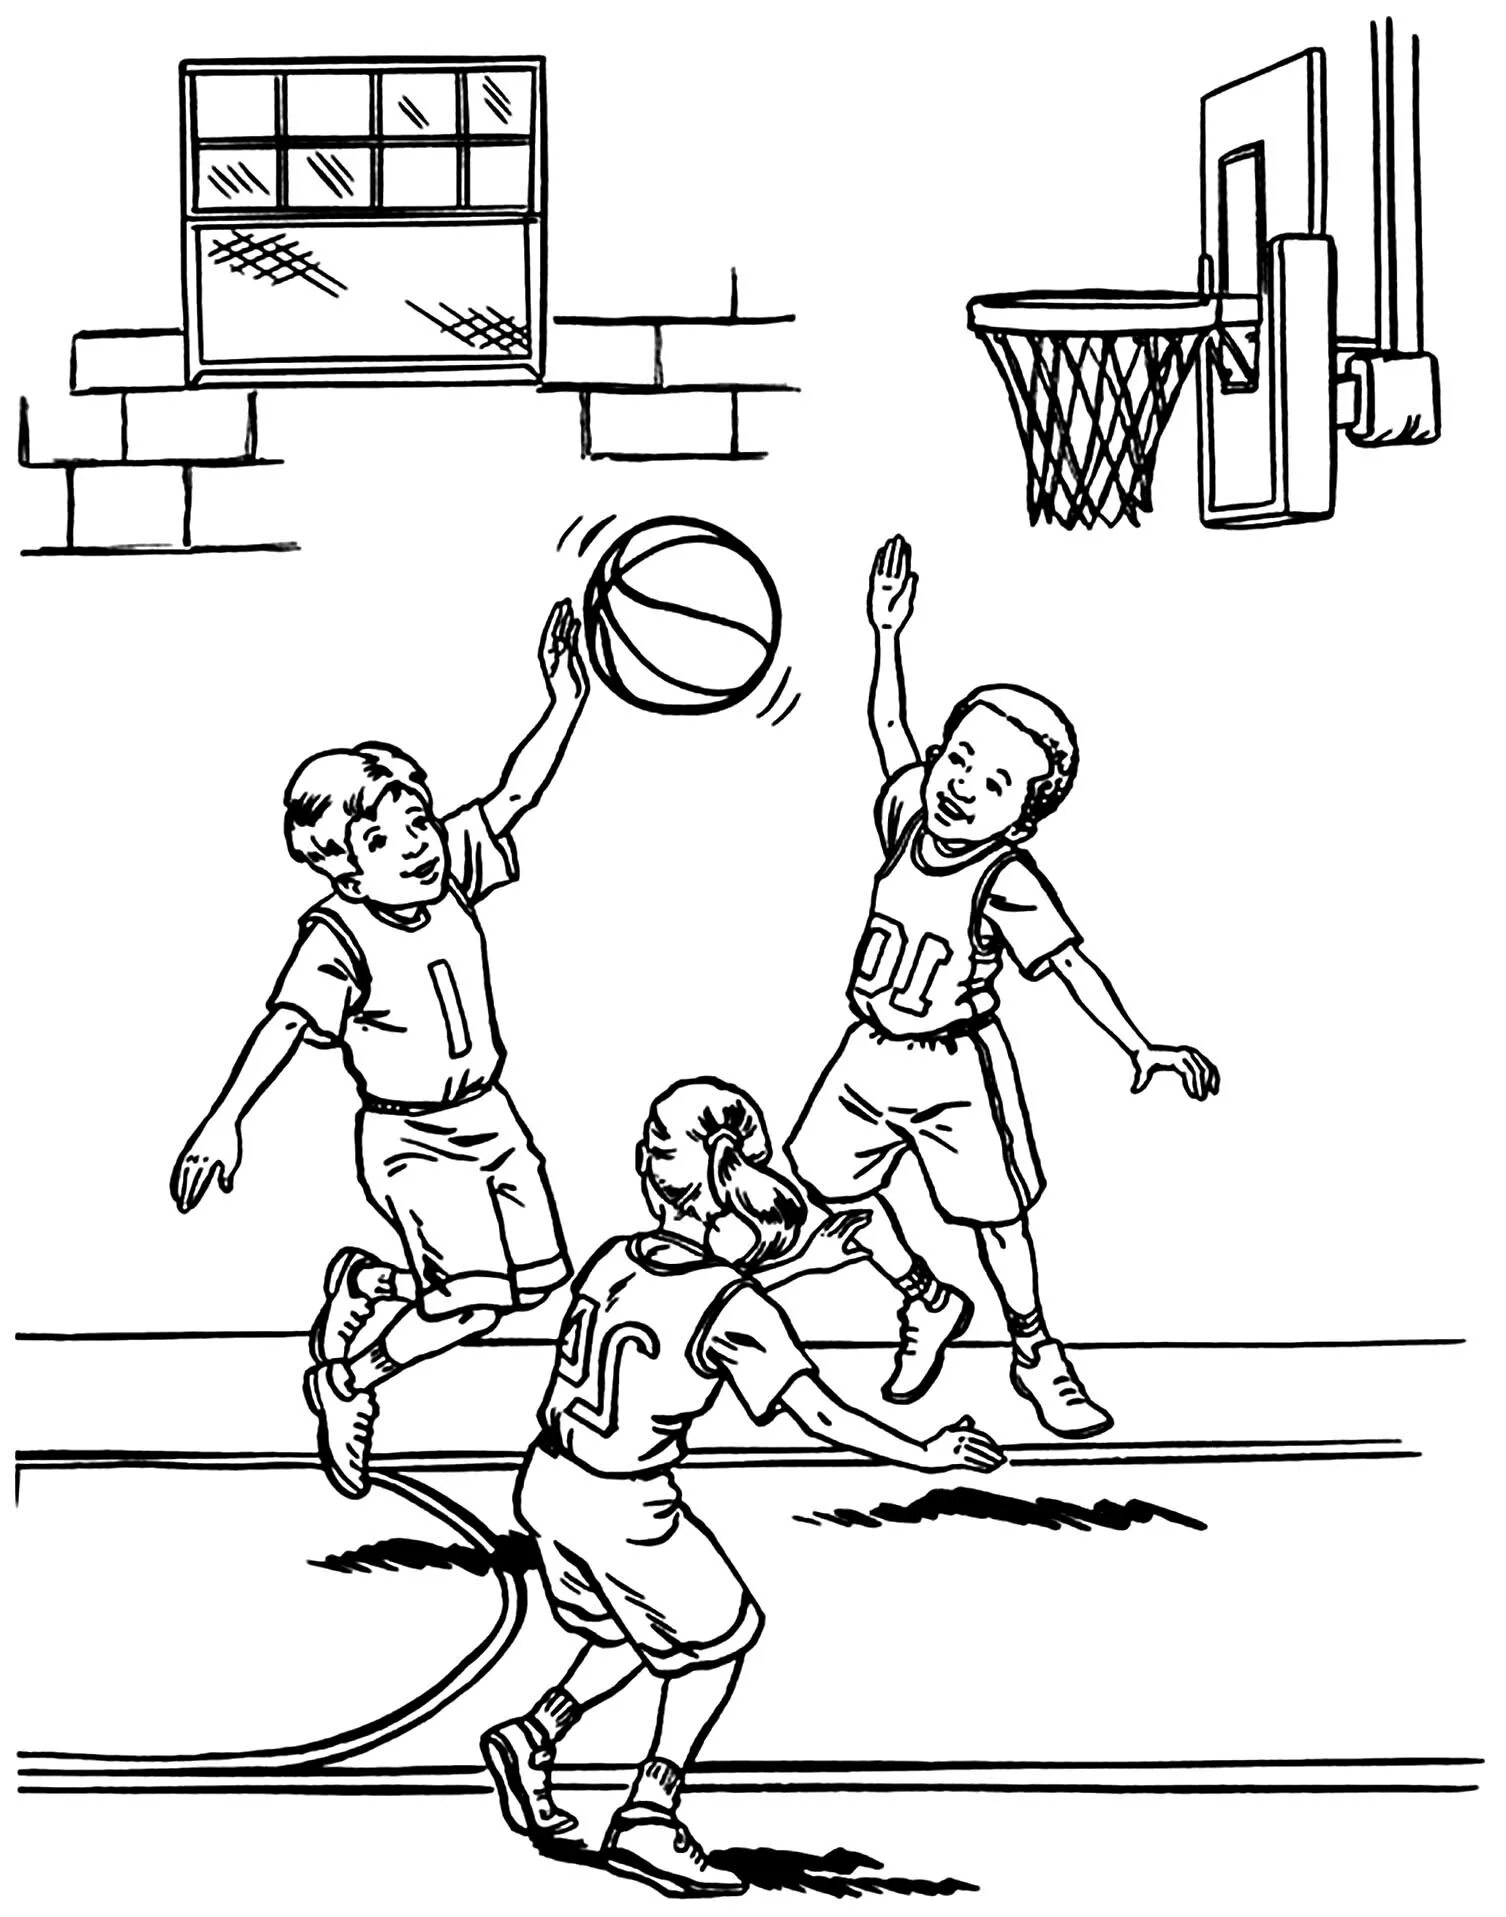 Children's basketball #15